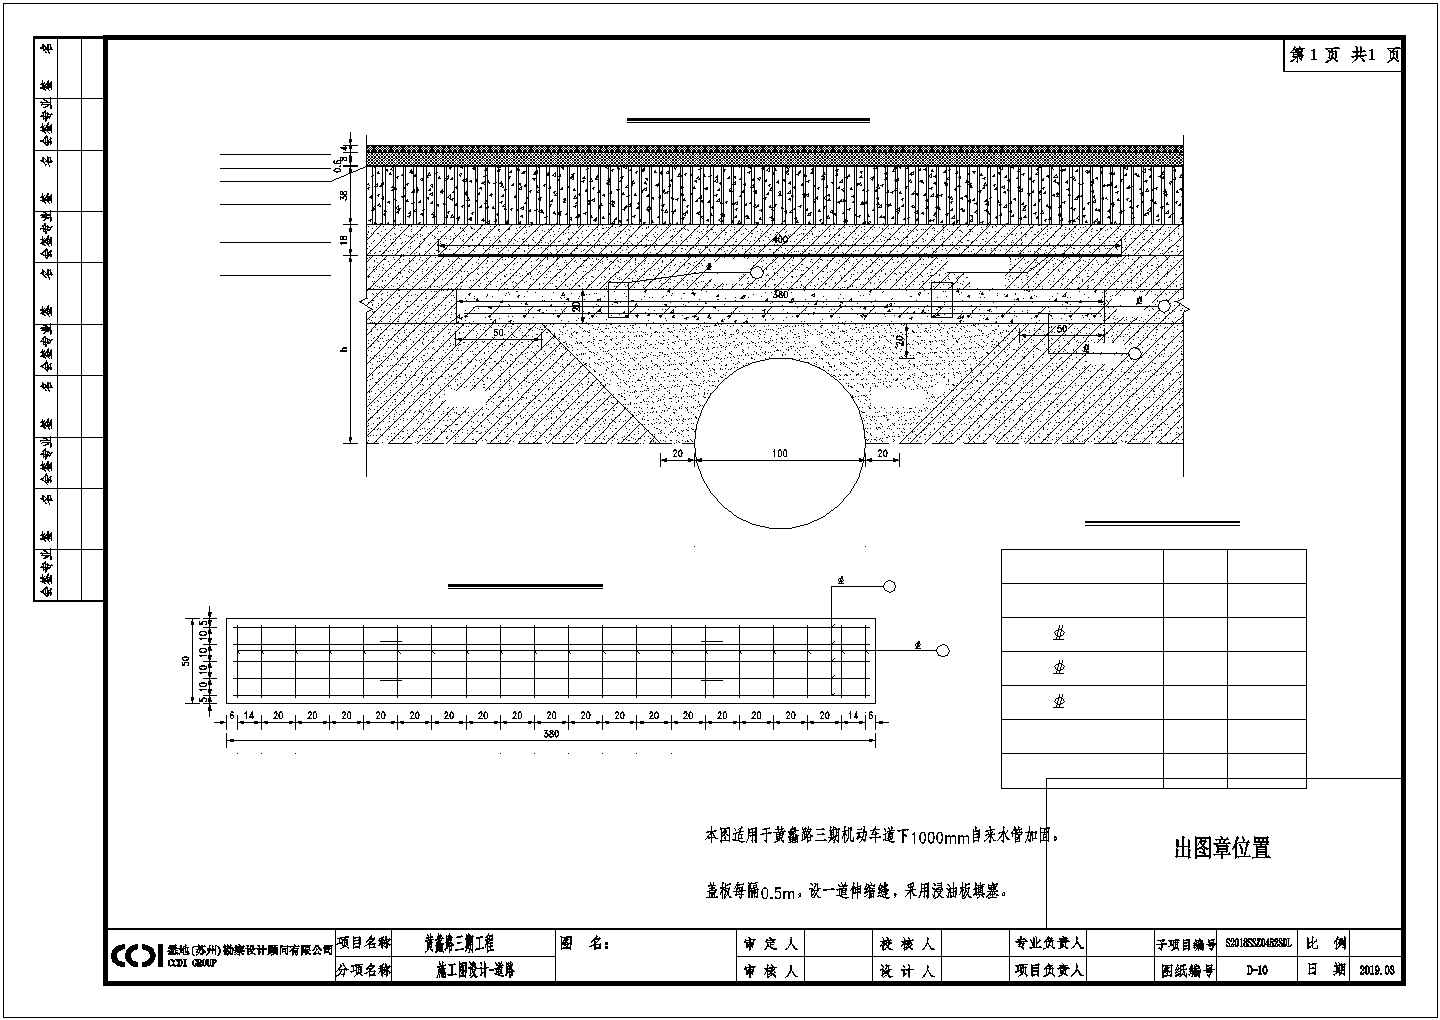 苏州市相城区宣公路（水厂街~兴盛路）工程-施工图设计-道路-10自来水管道加固设计图cad 图纸